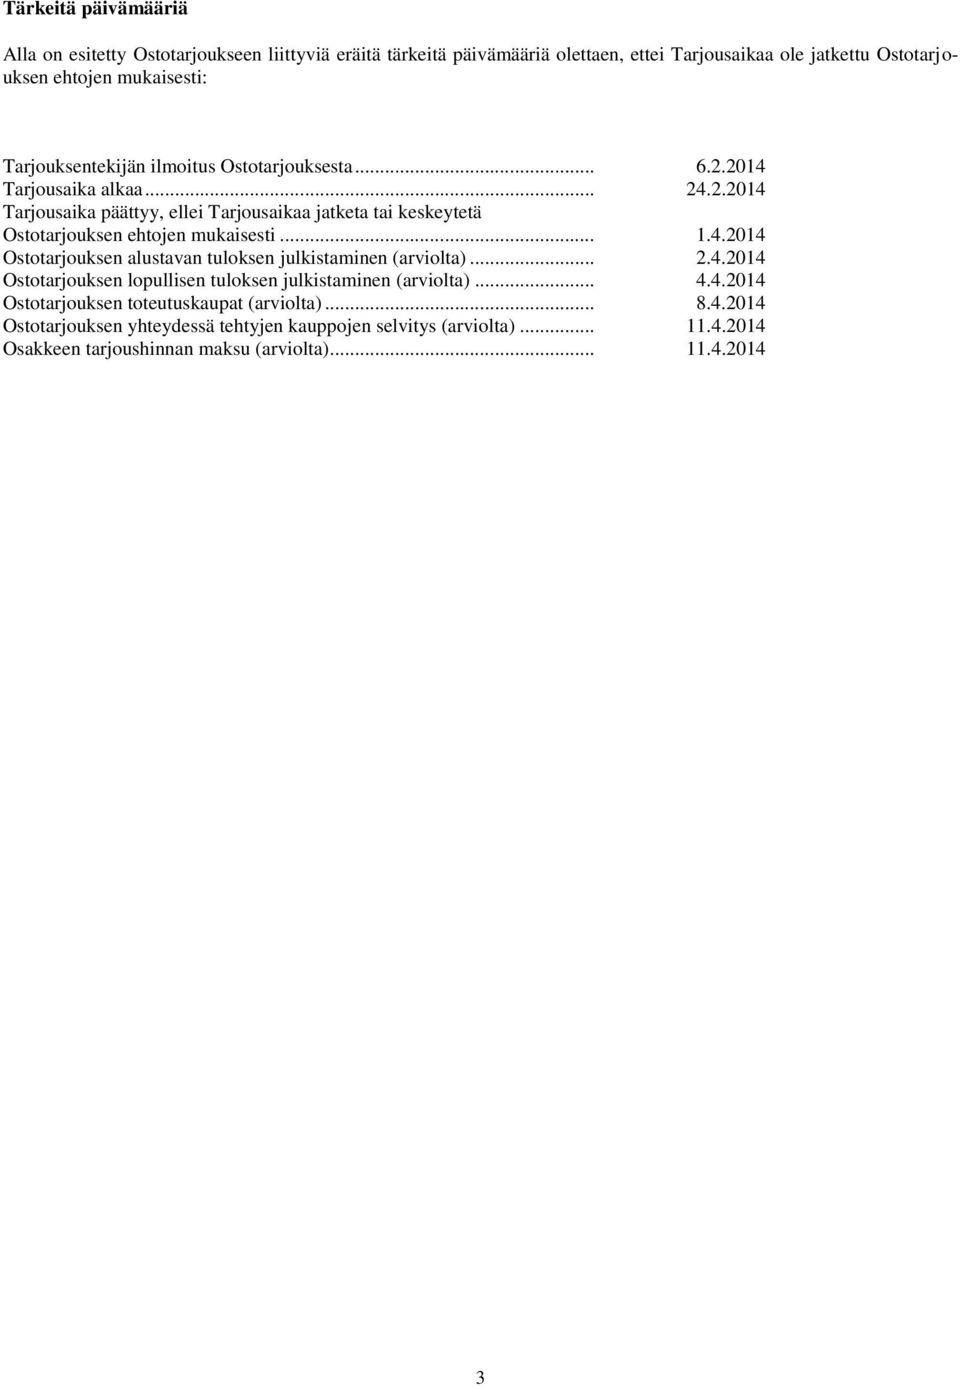 .. 1.4.2014 Ostotarjouksen alustavan tuloksen julkistaminen (arviolta)... 2.4.2014 Ostotarjouksen lopullisen tuloksen julkistaminen (arviolta)... 4.4.2014 Ostotarjouksen toteutuskaupat (arviolta).